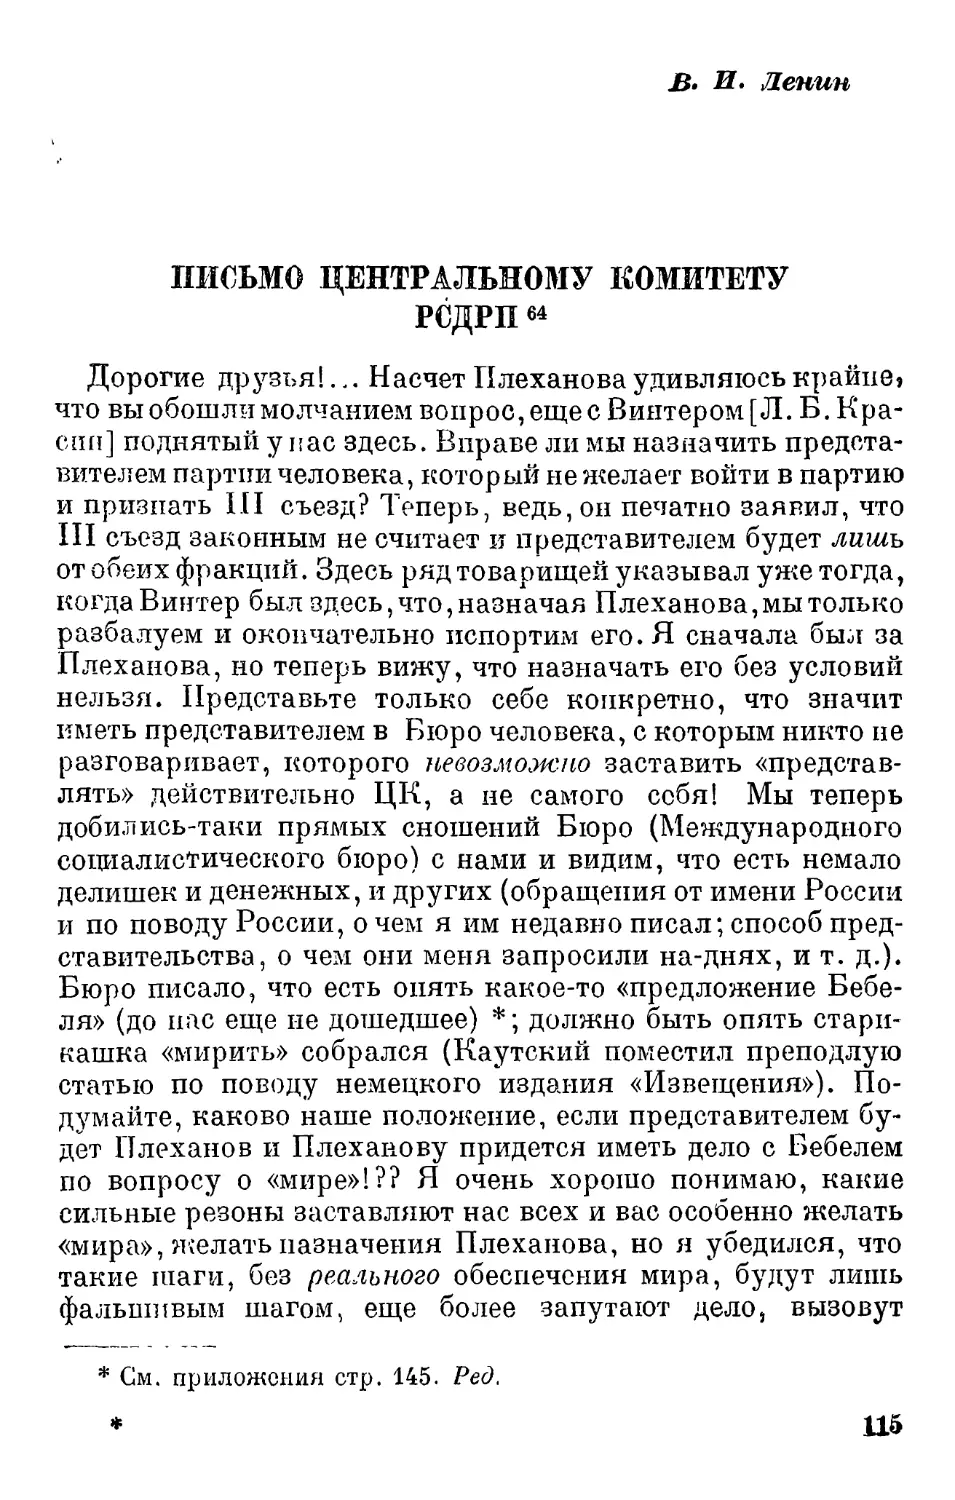 В.И. Ленин. Письмо ЦК РСДРП. 12 июля 1905 г.